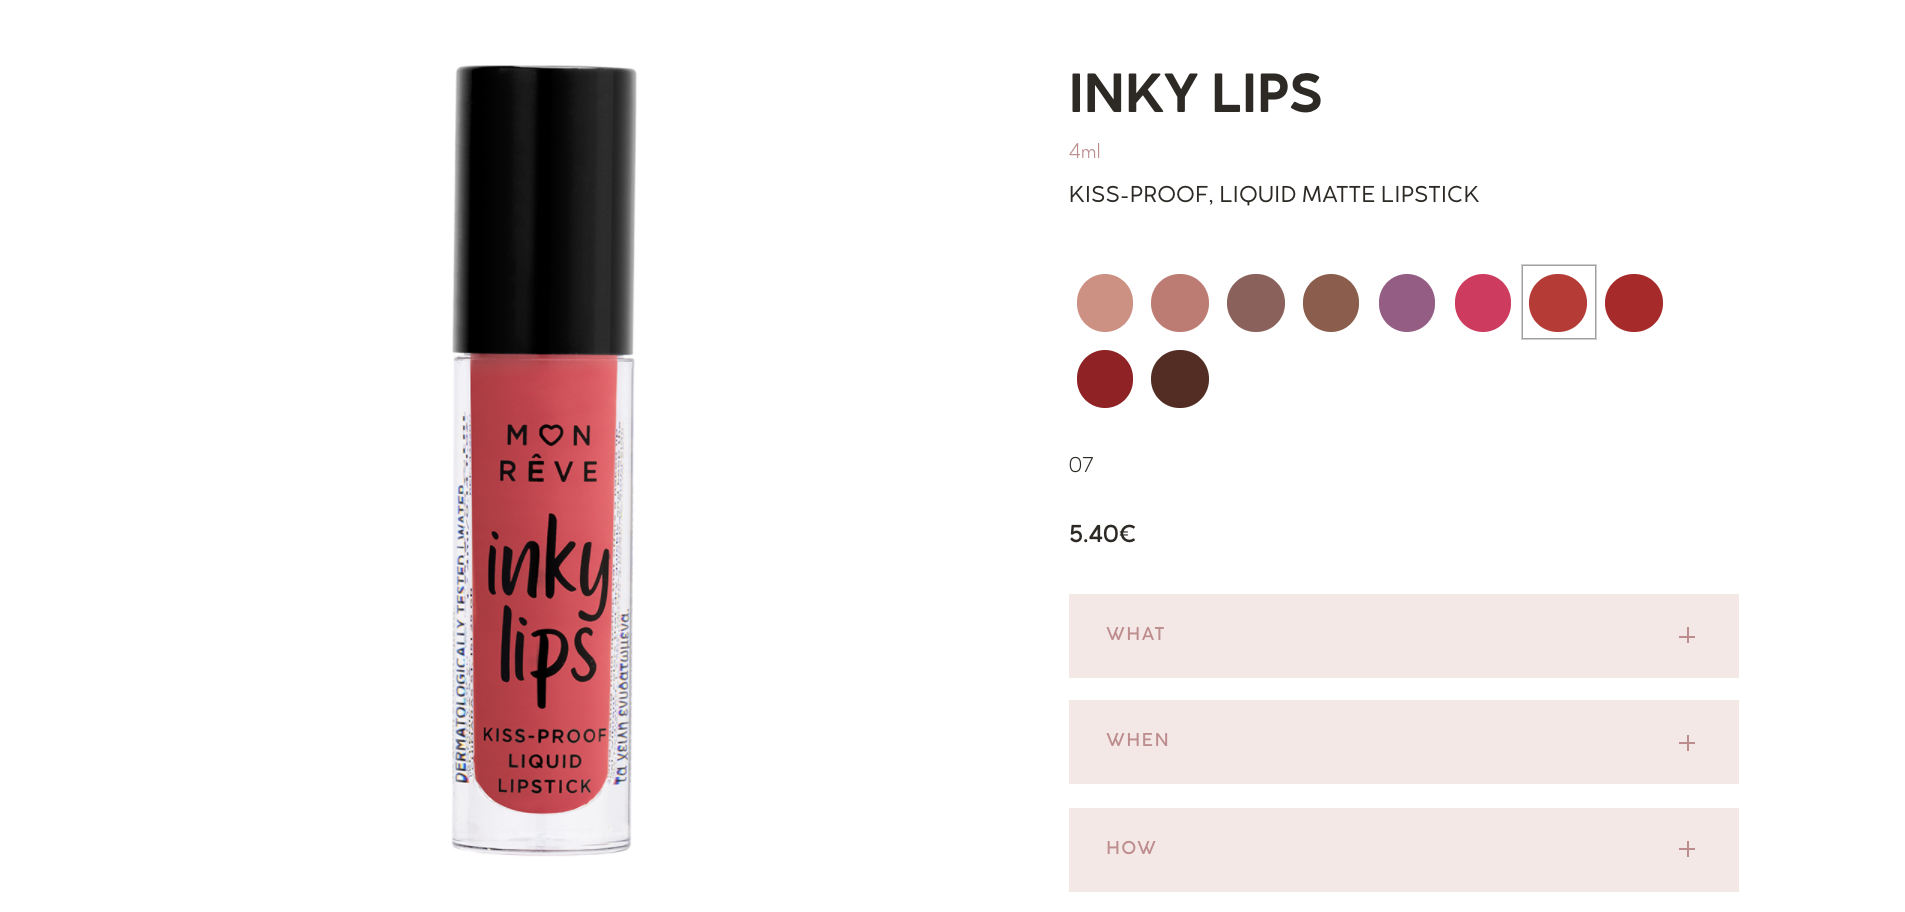 Τα ολοκαίνουργια Inky Lips της Mon Reve των 5,40€ είναι τα must-try κραγιόν της άνοιξης